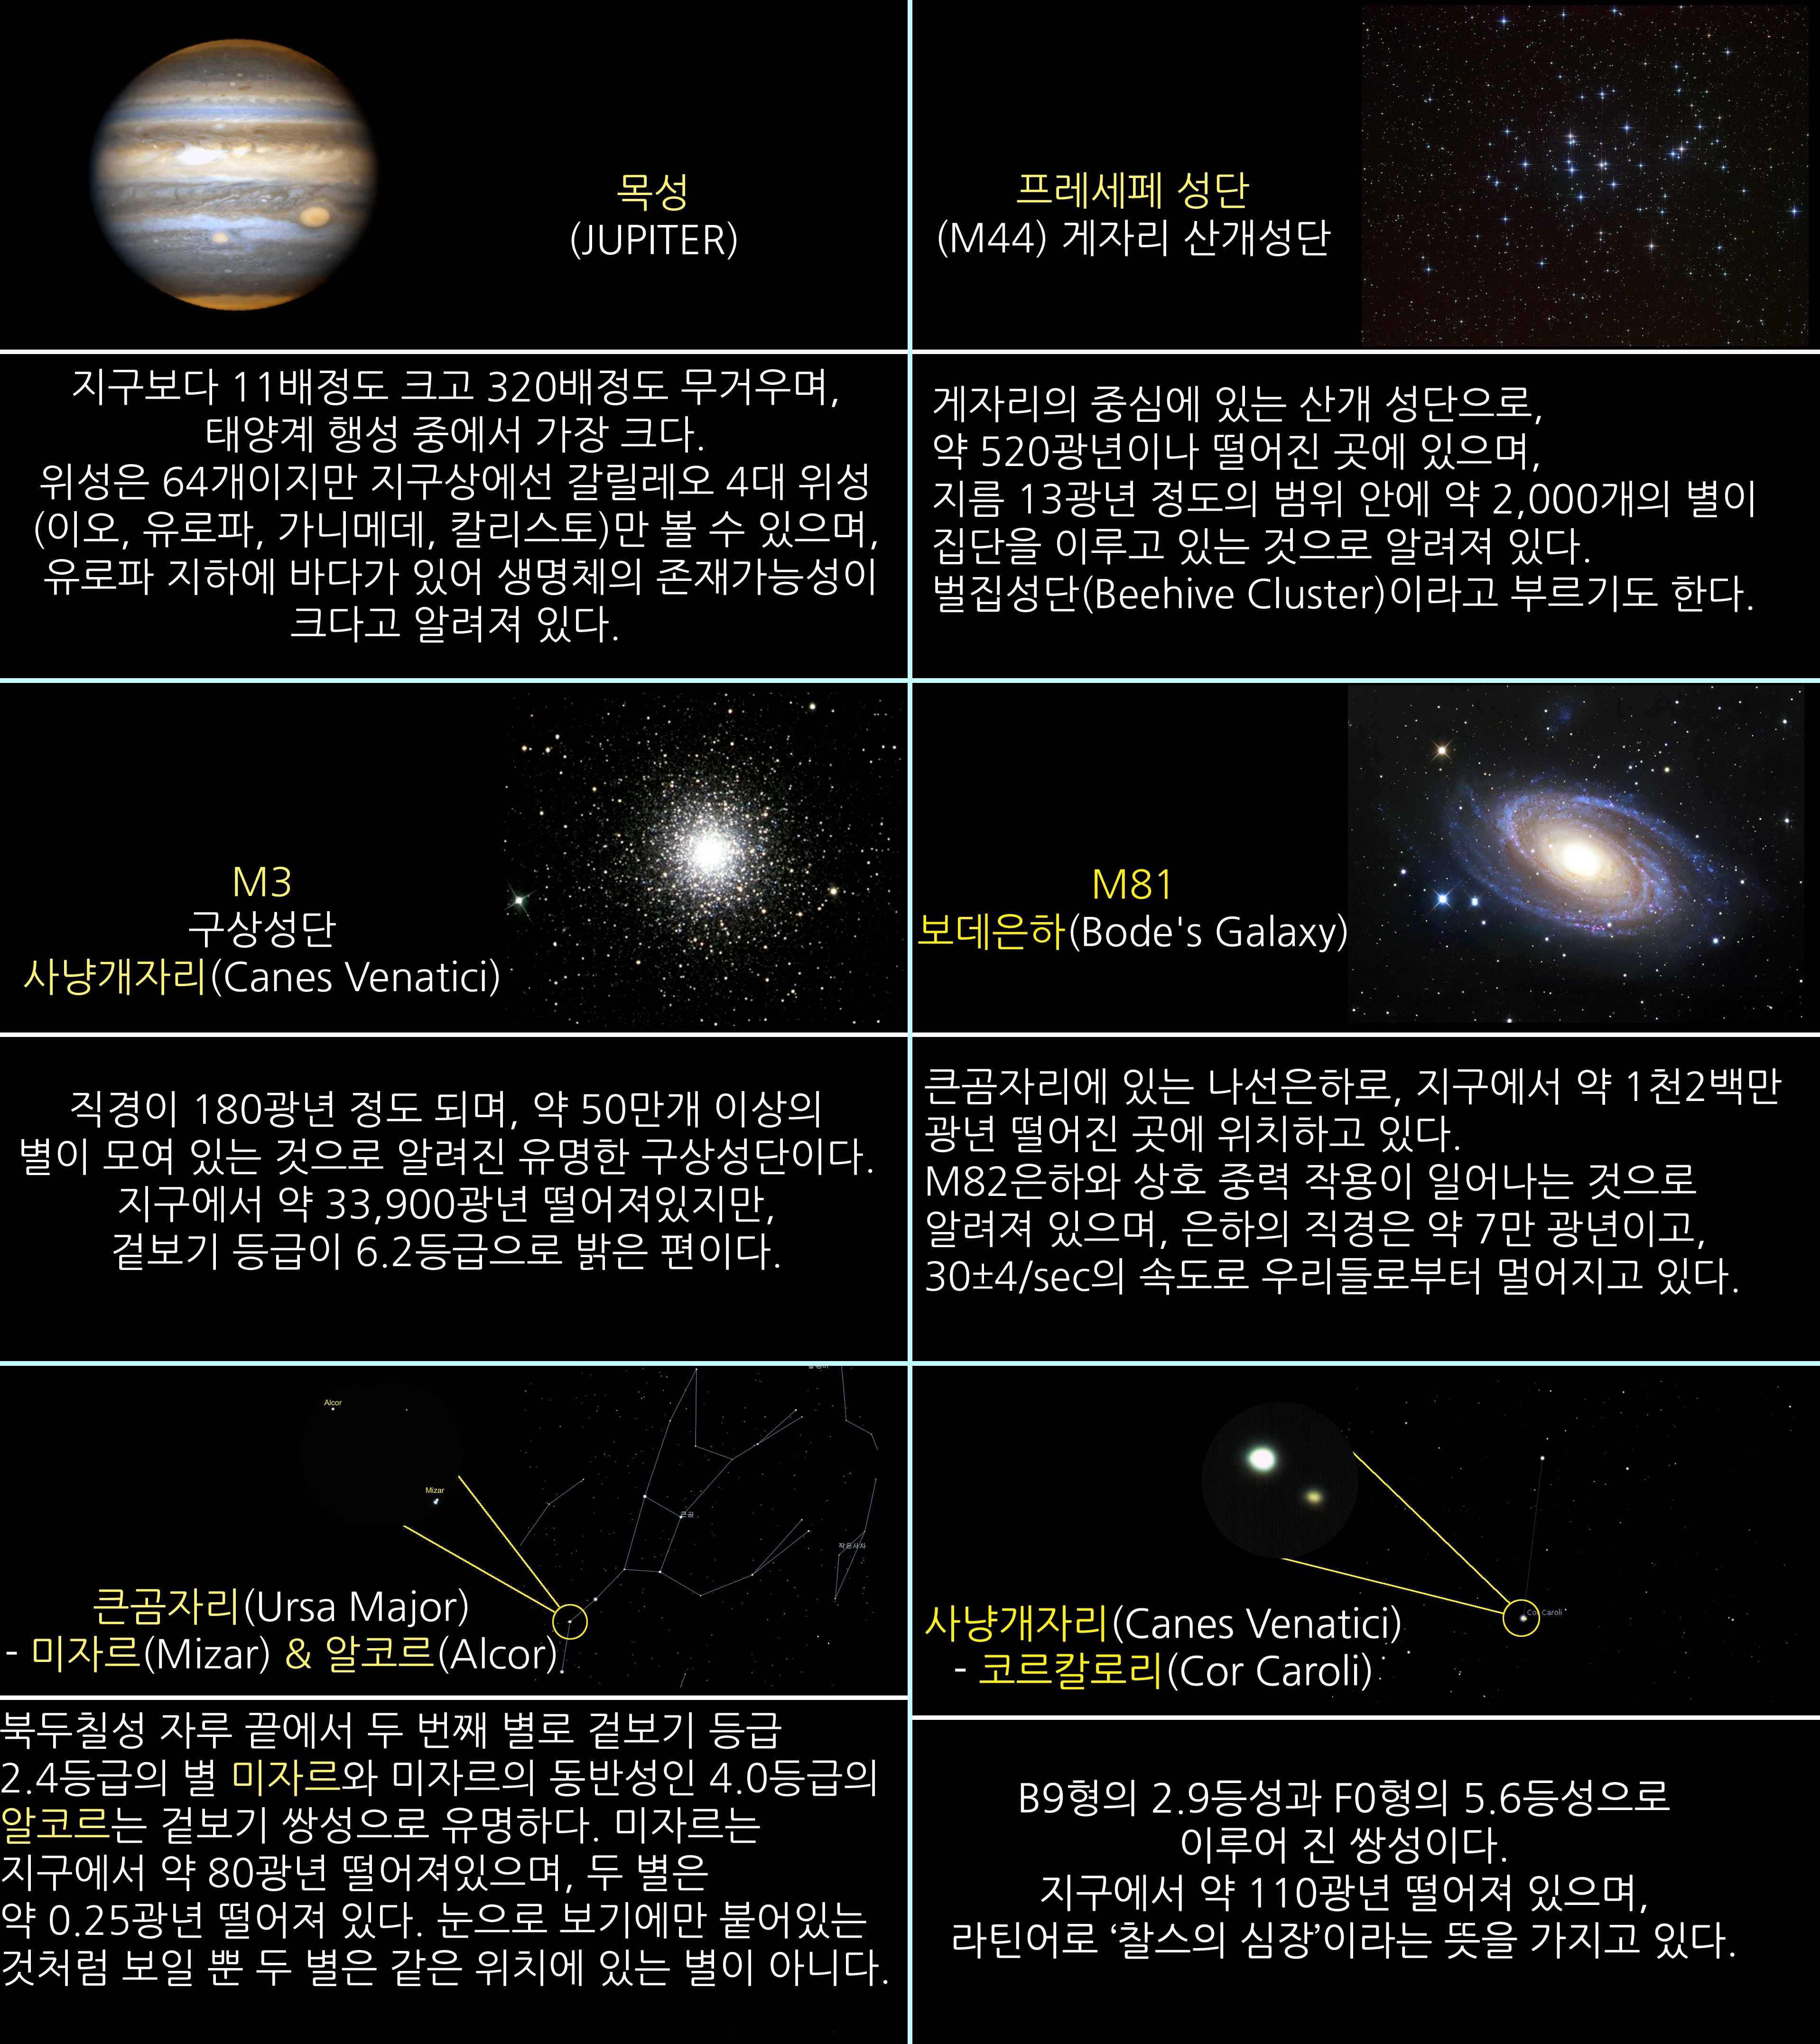 2017년 4월 주요천체관측 대상